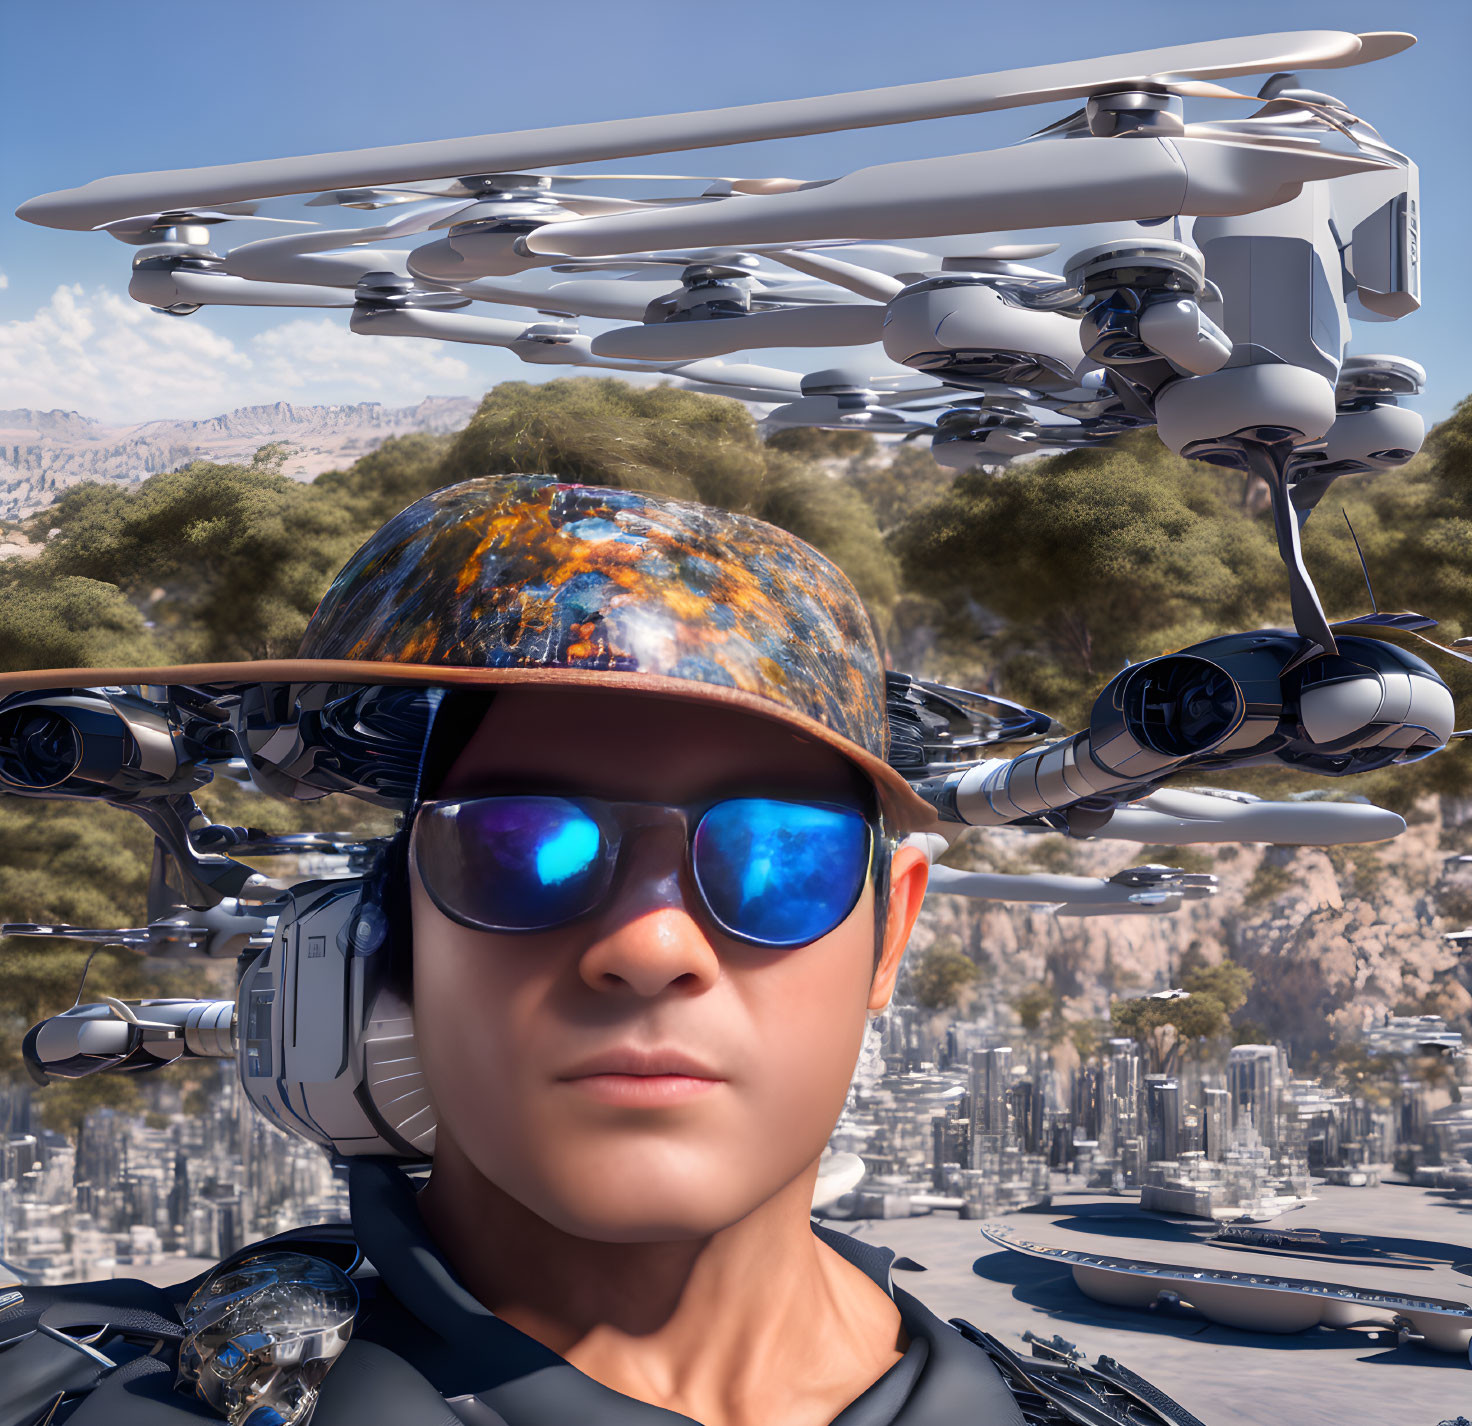 Male figure in futuristic attire with drones, cityscape, and rocky terrain.